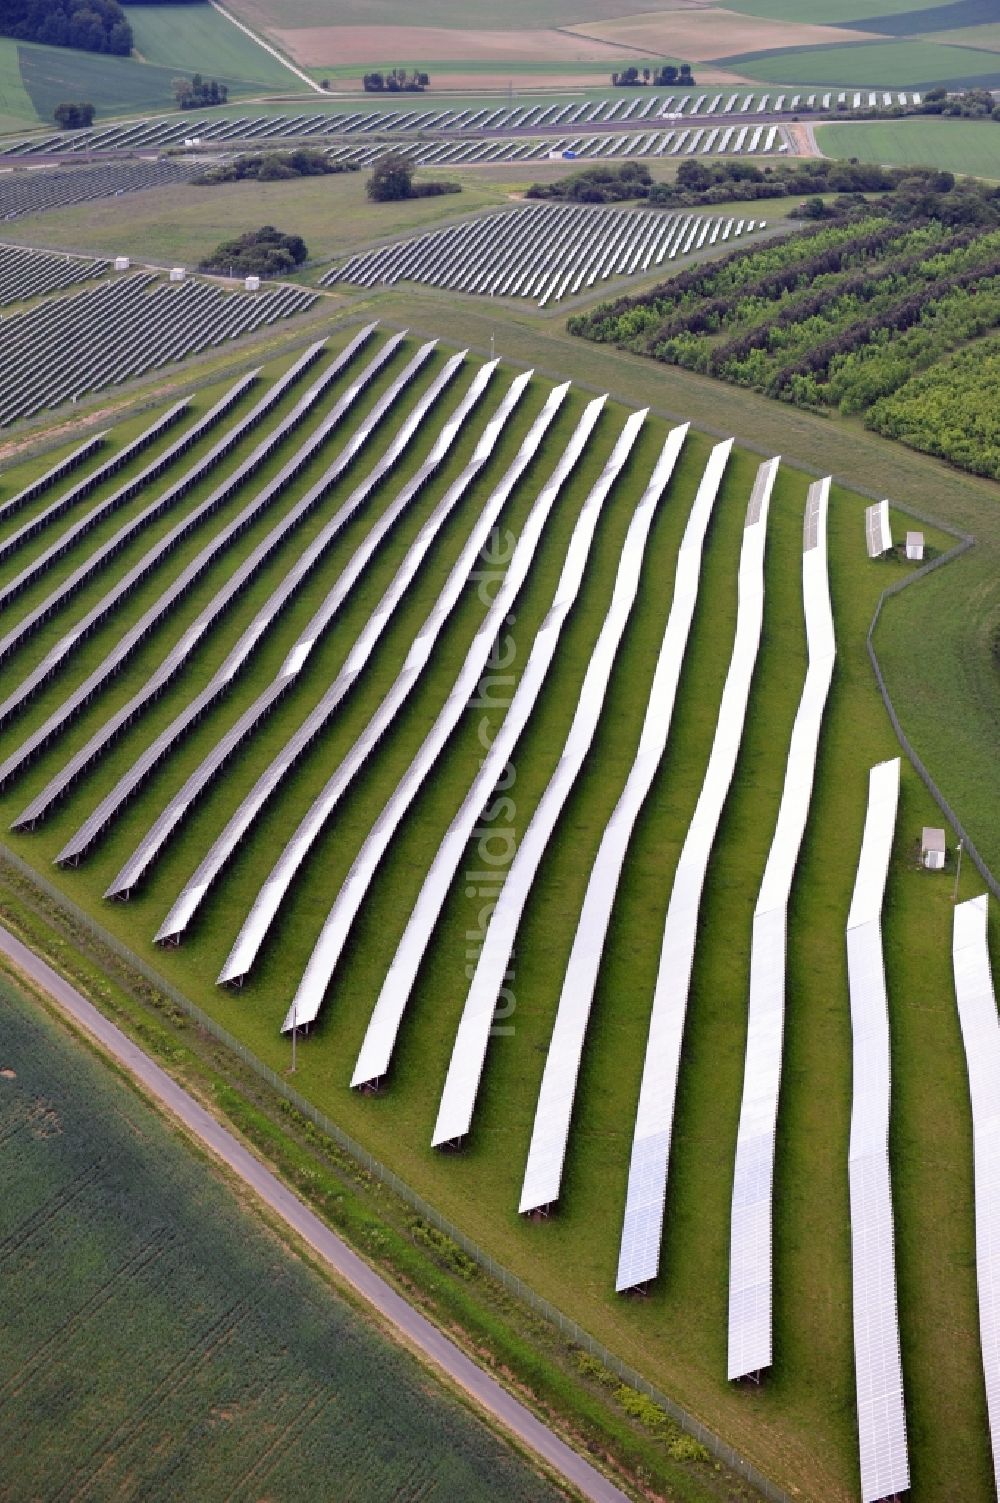 Luftaufnahme Laudenbach - Solarpark Laudenbach in Bayern